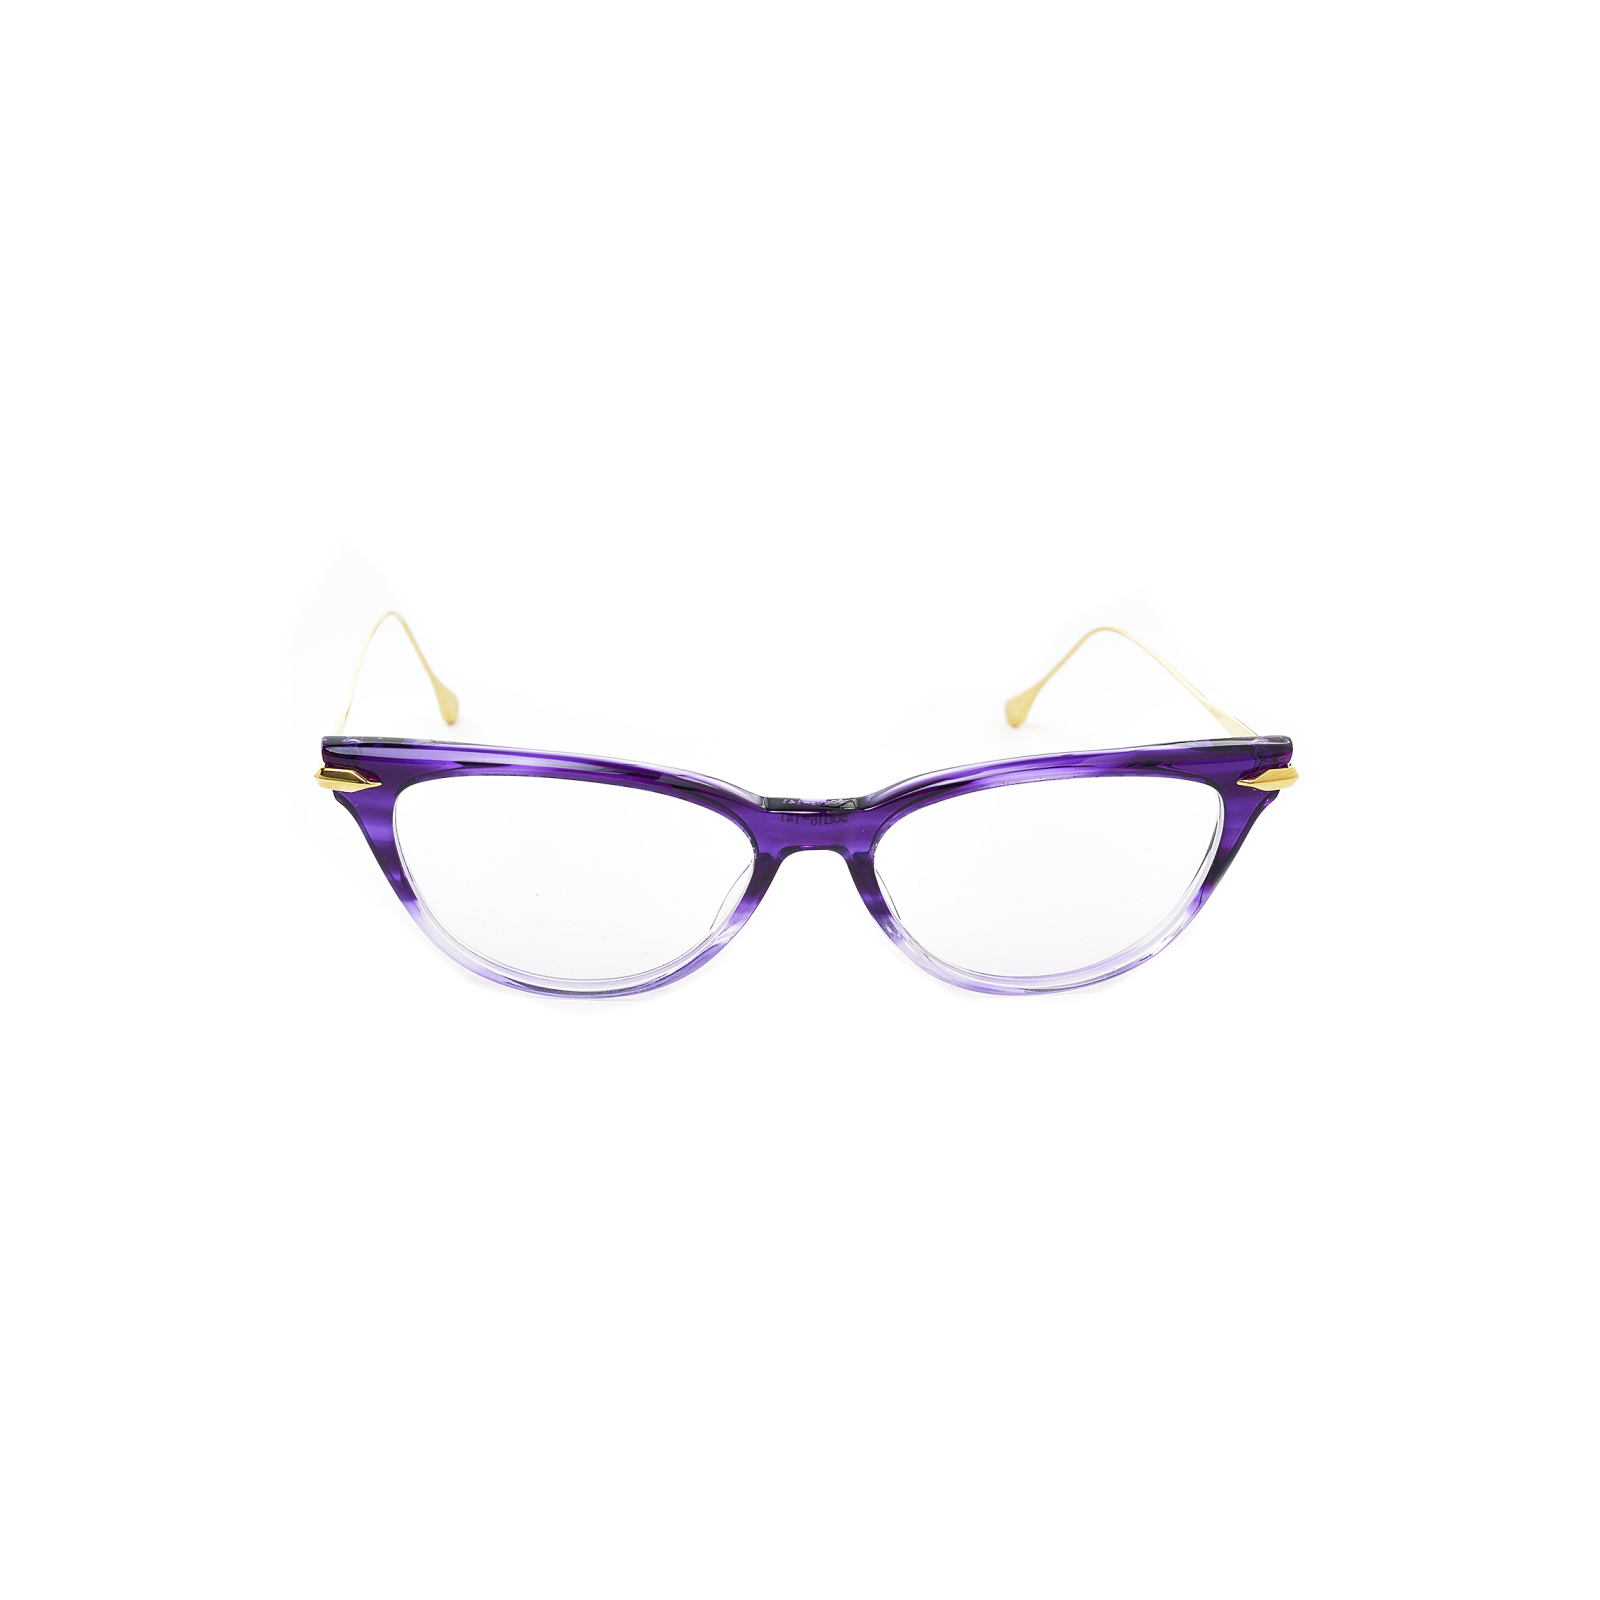 Okulary optyczne fioletowe